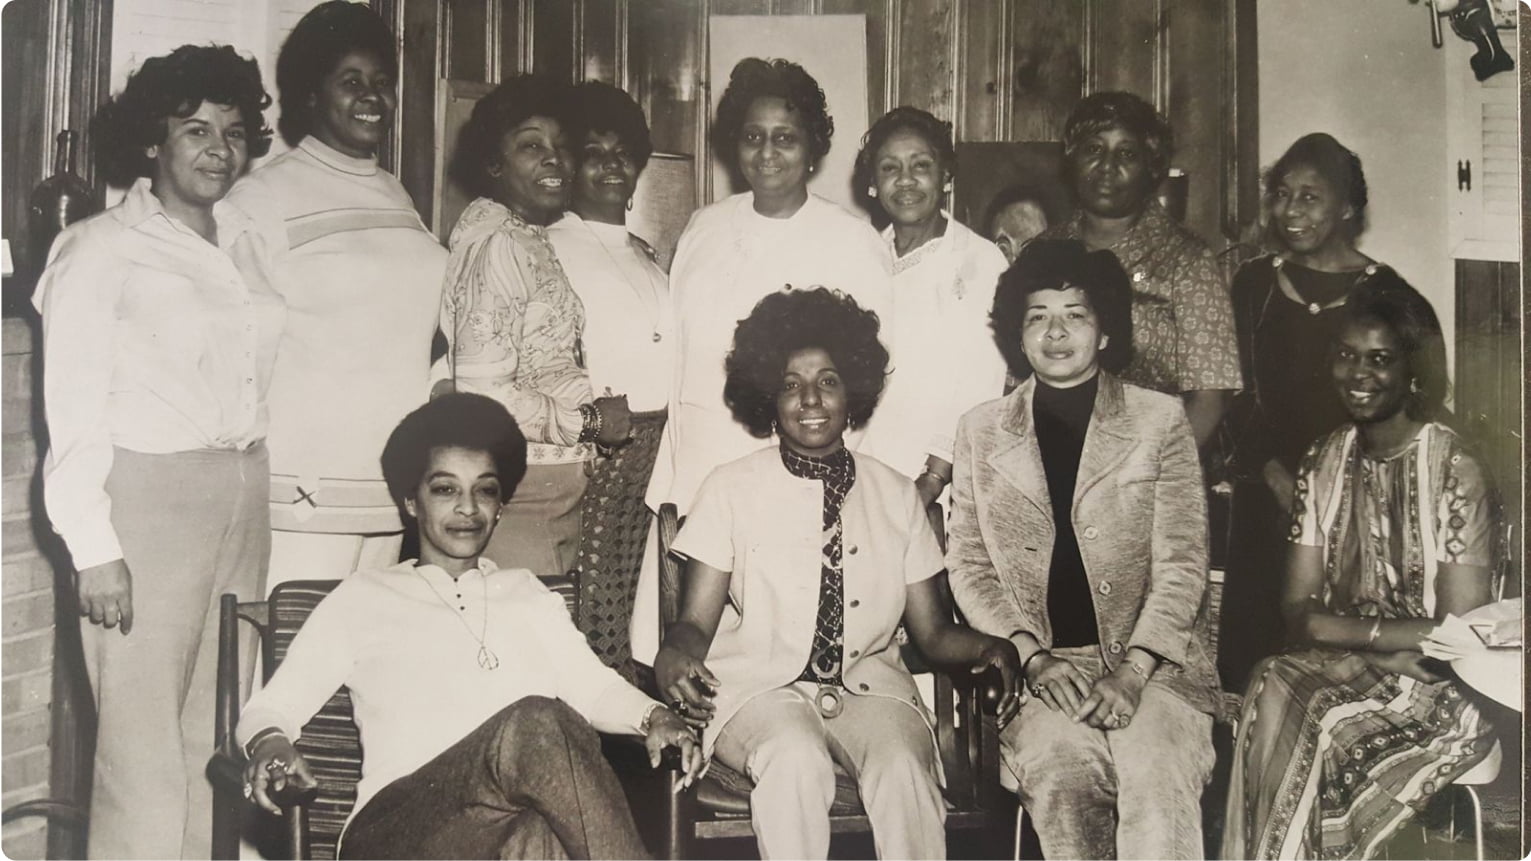 Fotografía grupal de las fundadoras de la NBNA (National Black Nurses Association)